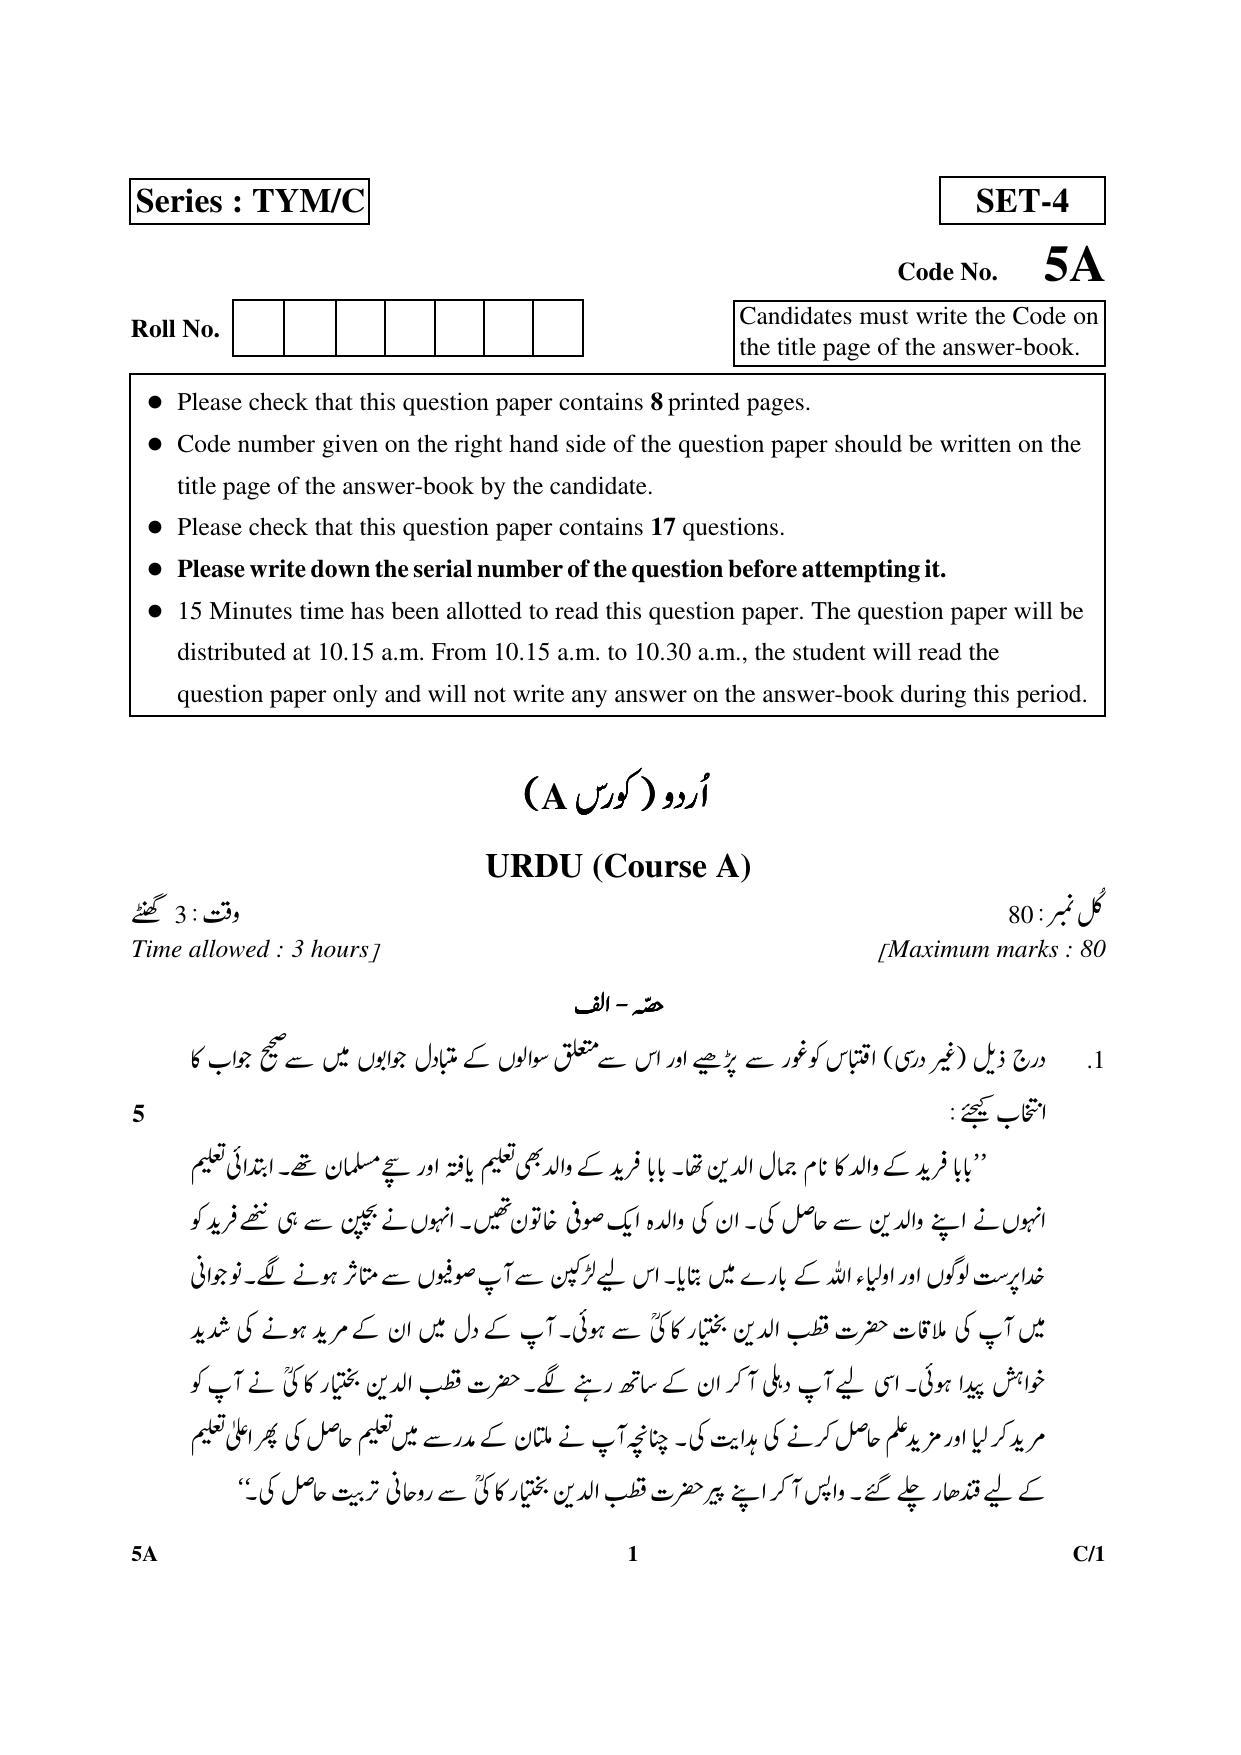 CBSE Class 10 5A Urdu (Course A) 2018 Compartment Question Paper - Page 1